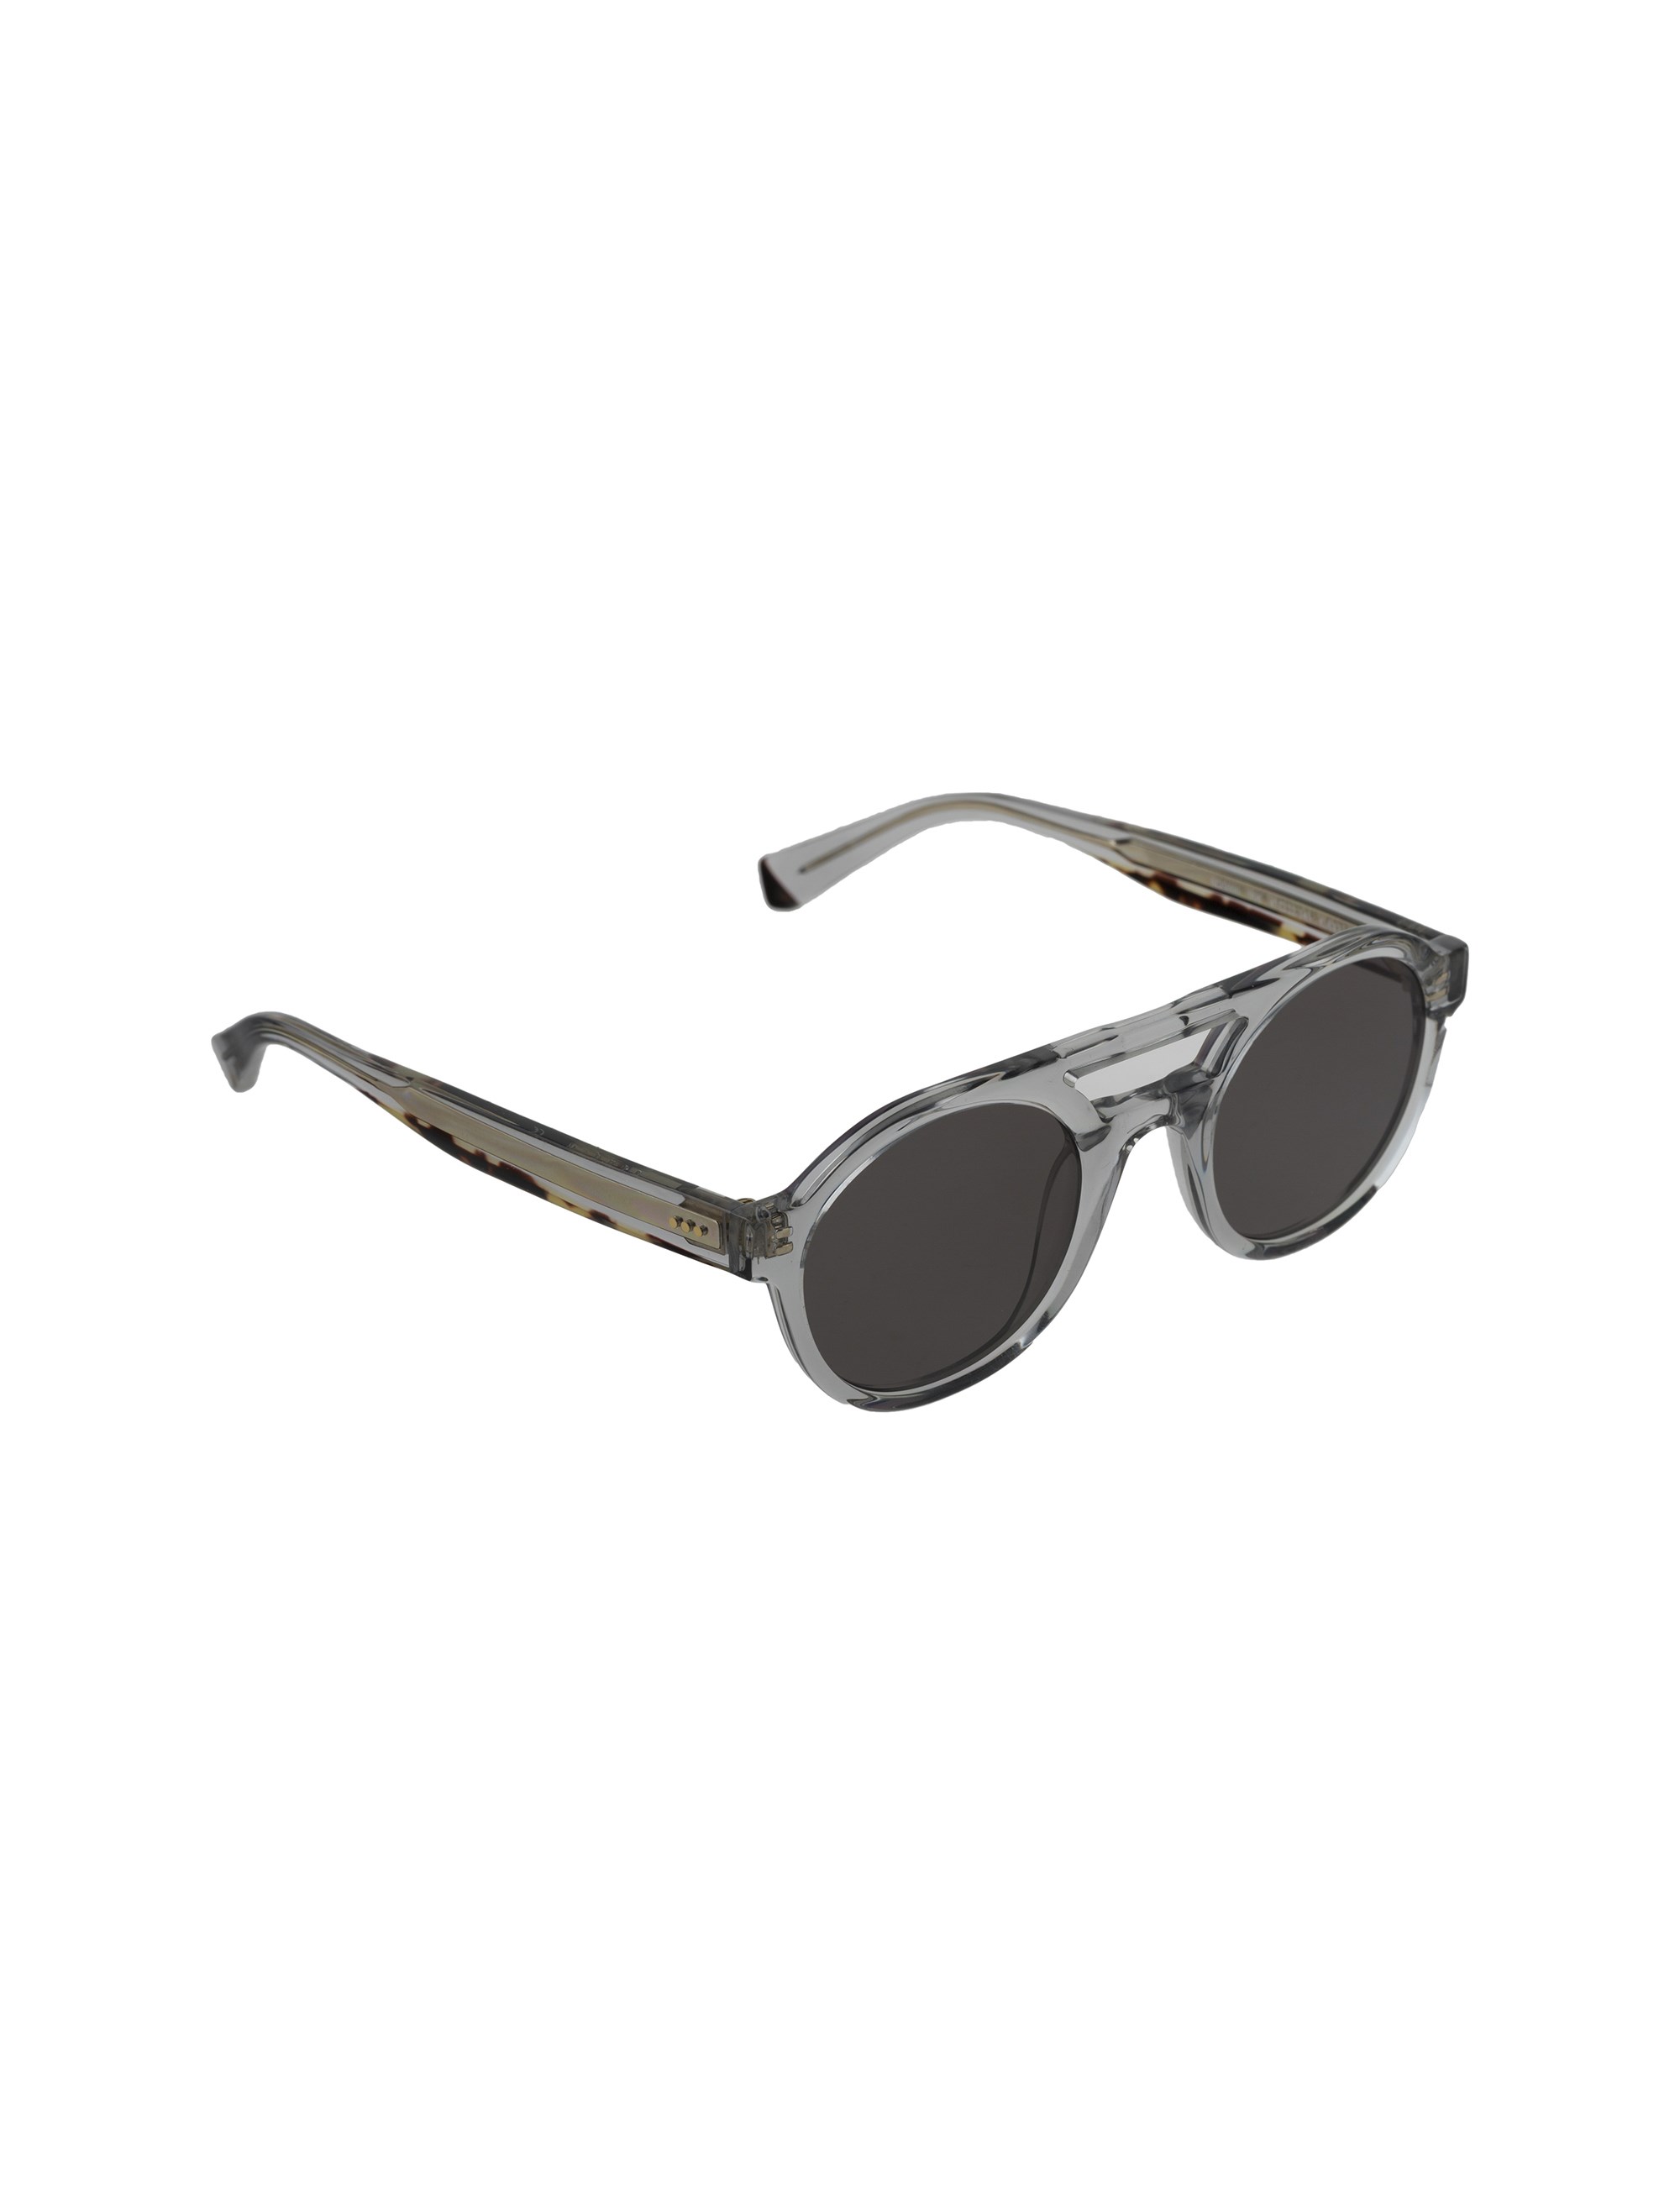 عینک آفتابی خلبانی مردانه - ساندرو - طوسي   - 3